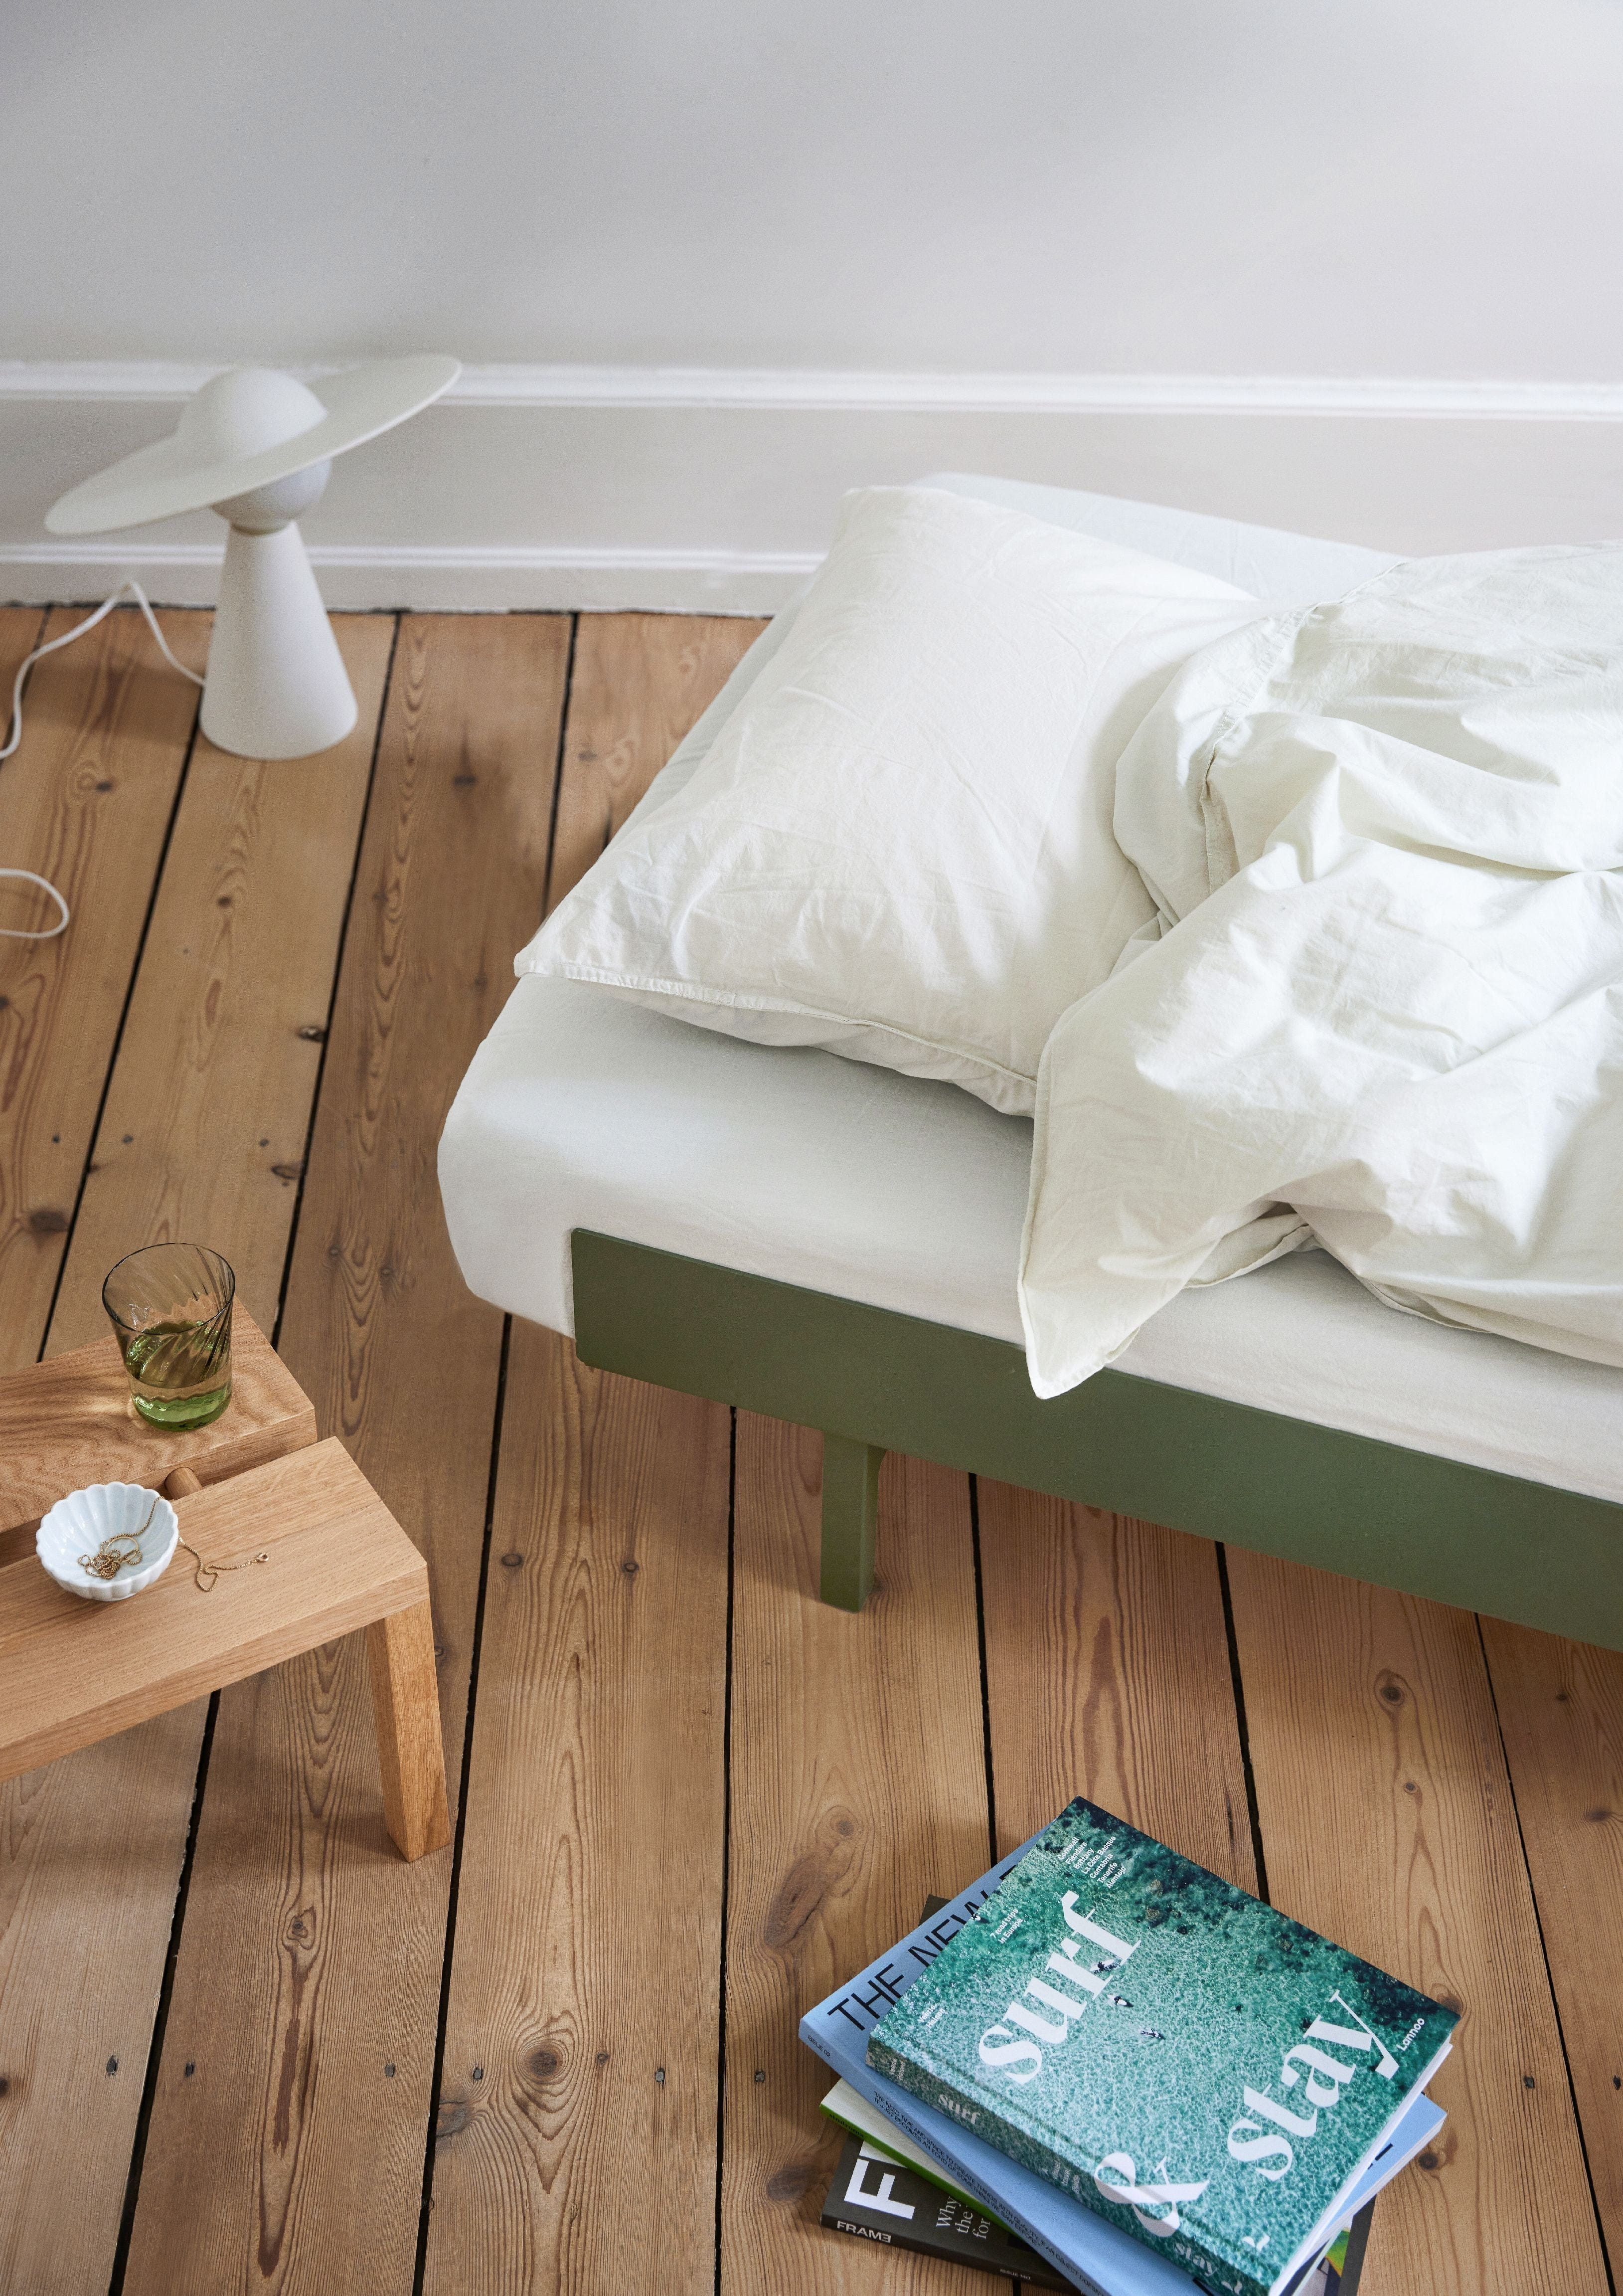 Moebe seng med 1 nat tabel 90 cm, fyrren grøn